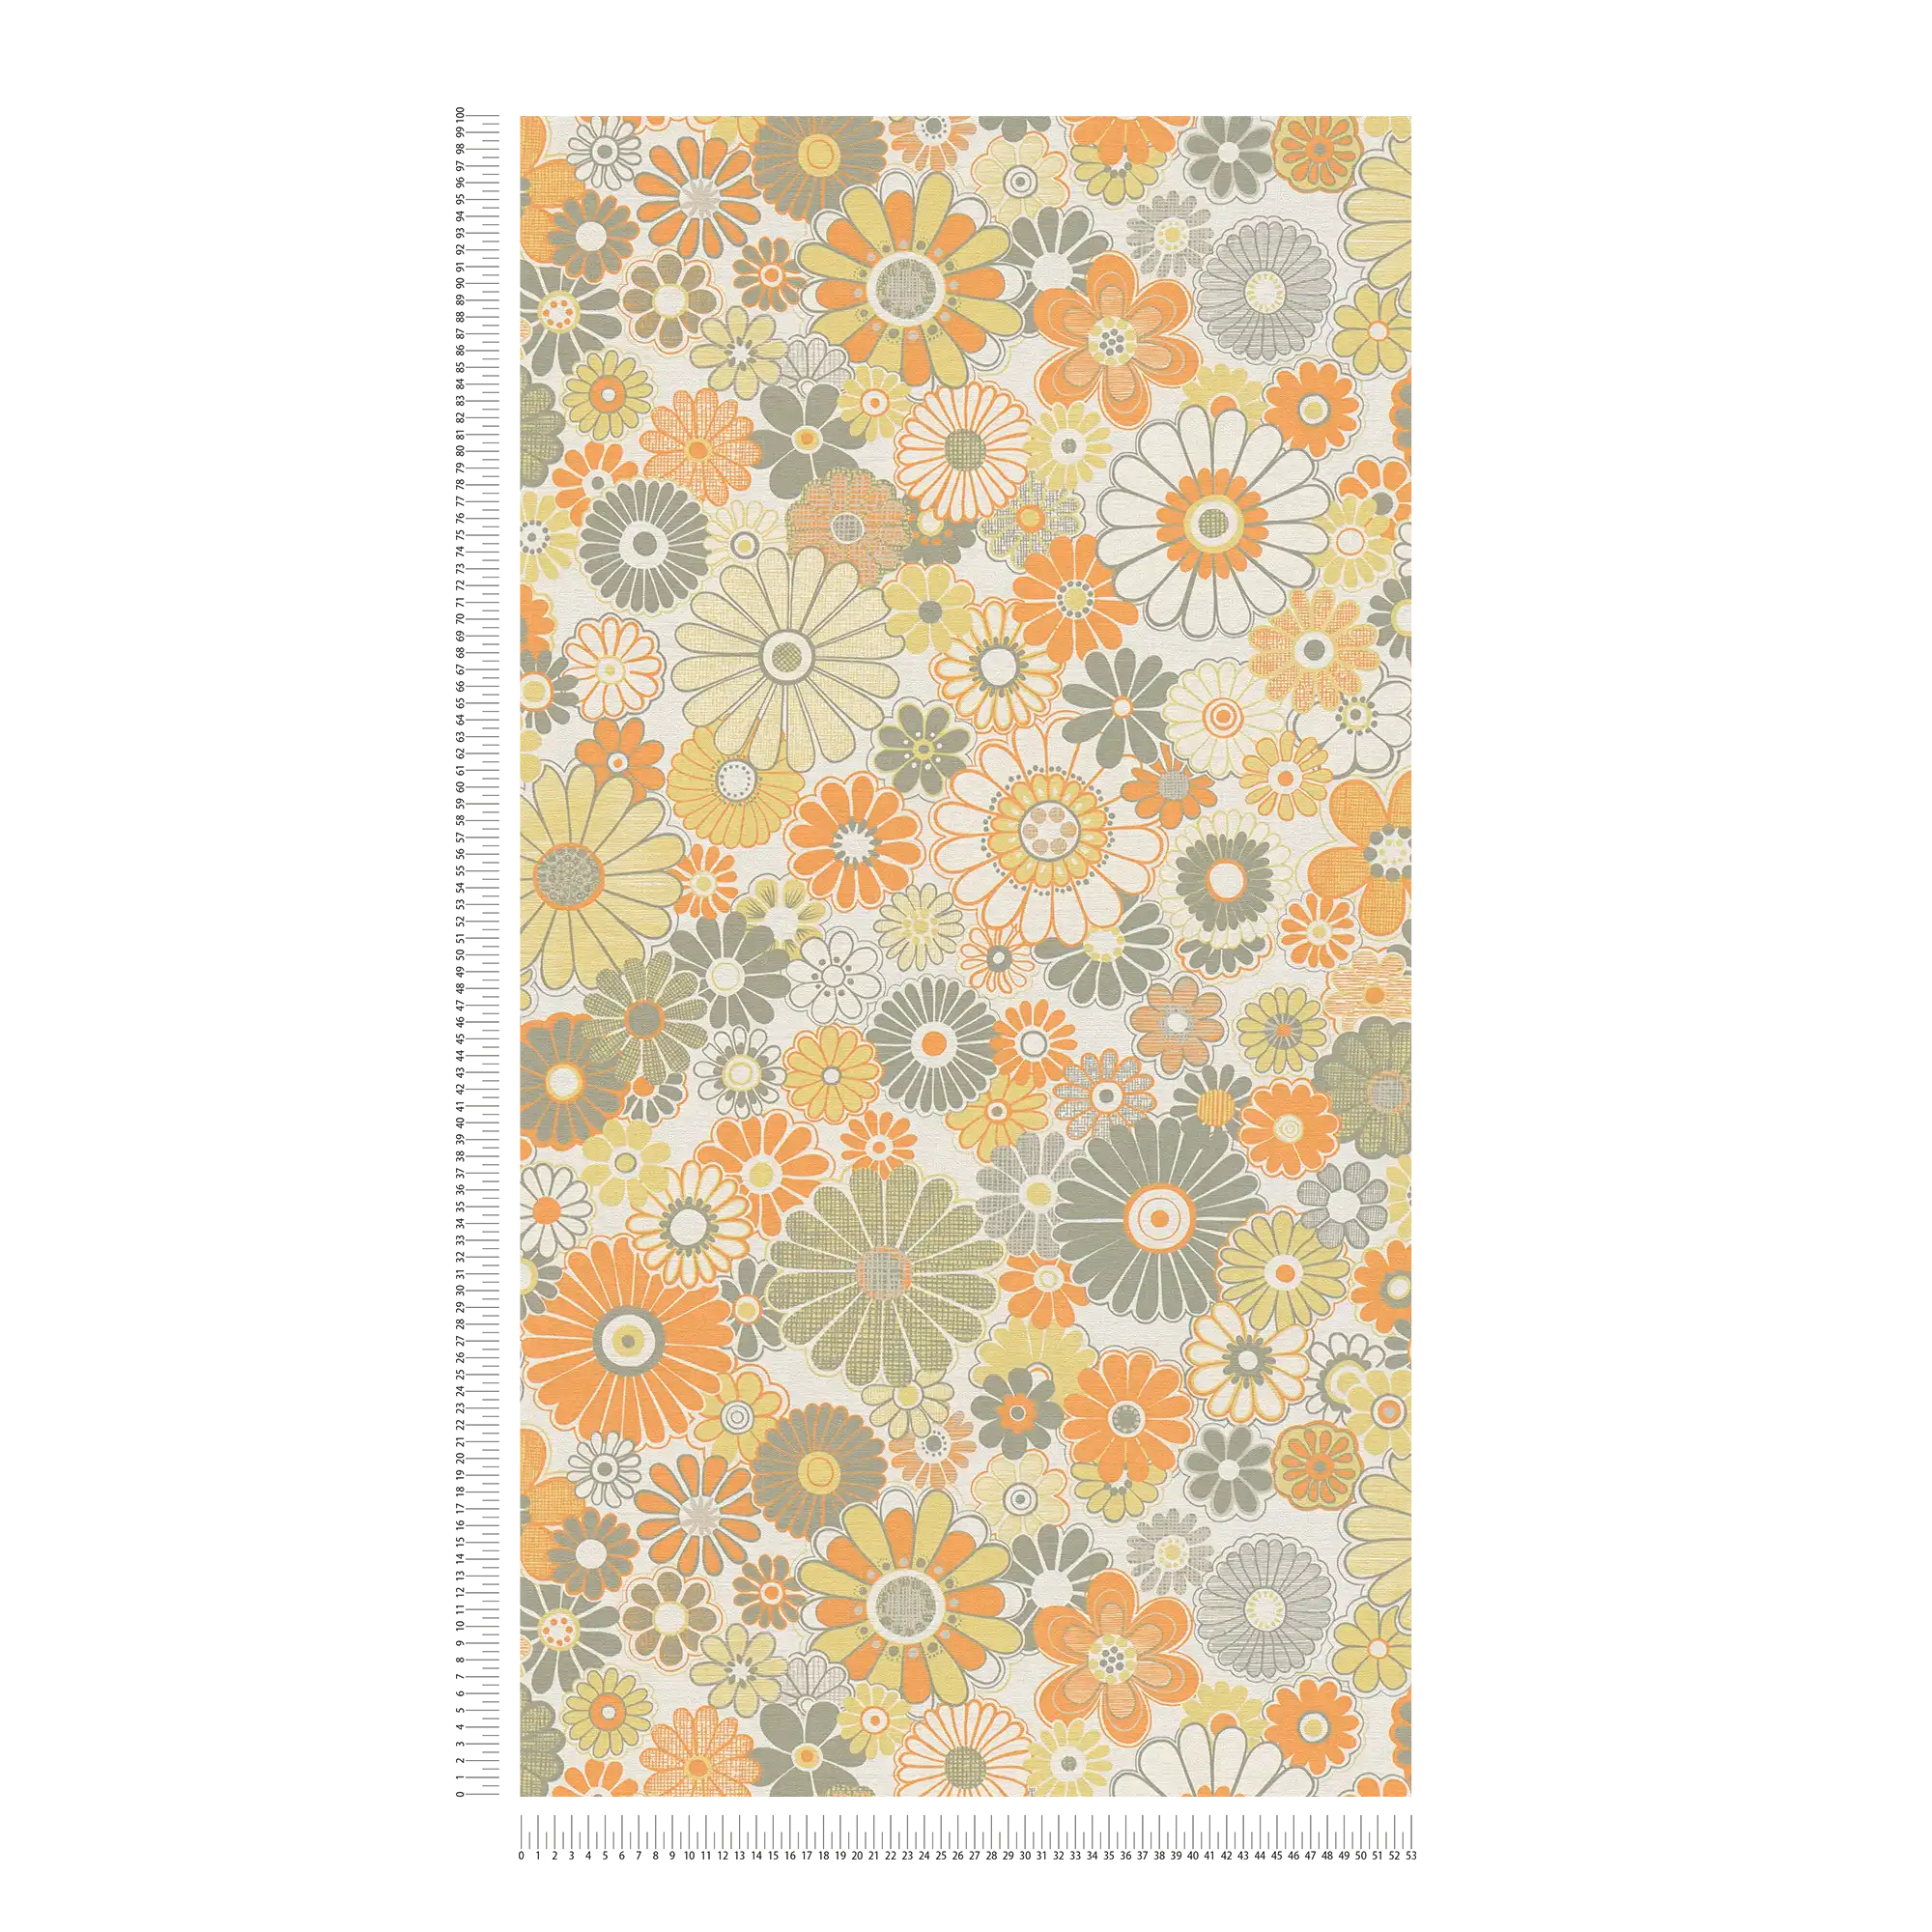             Papel pintado floral de estilo retro ligeramente texturizado - naranja, verde, blanco
        